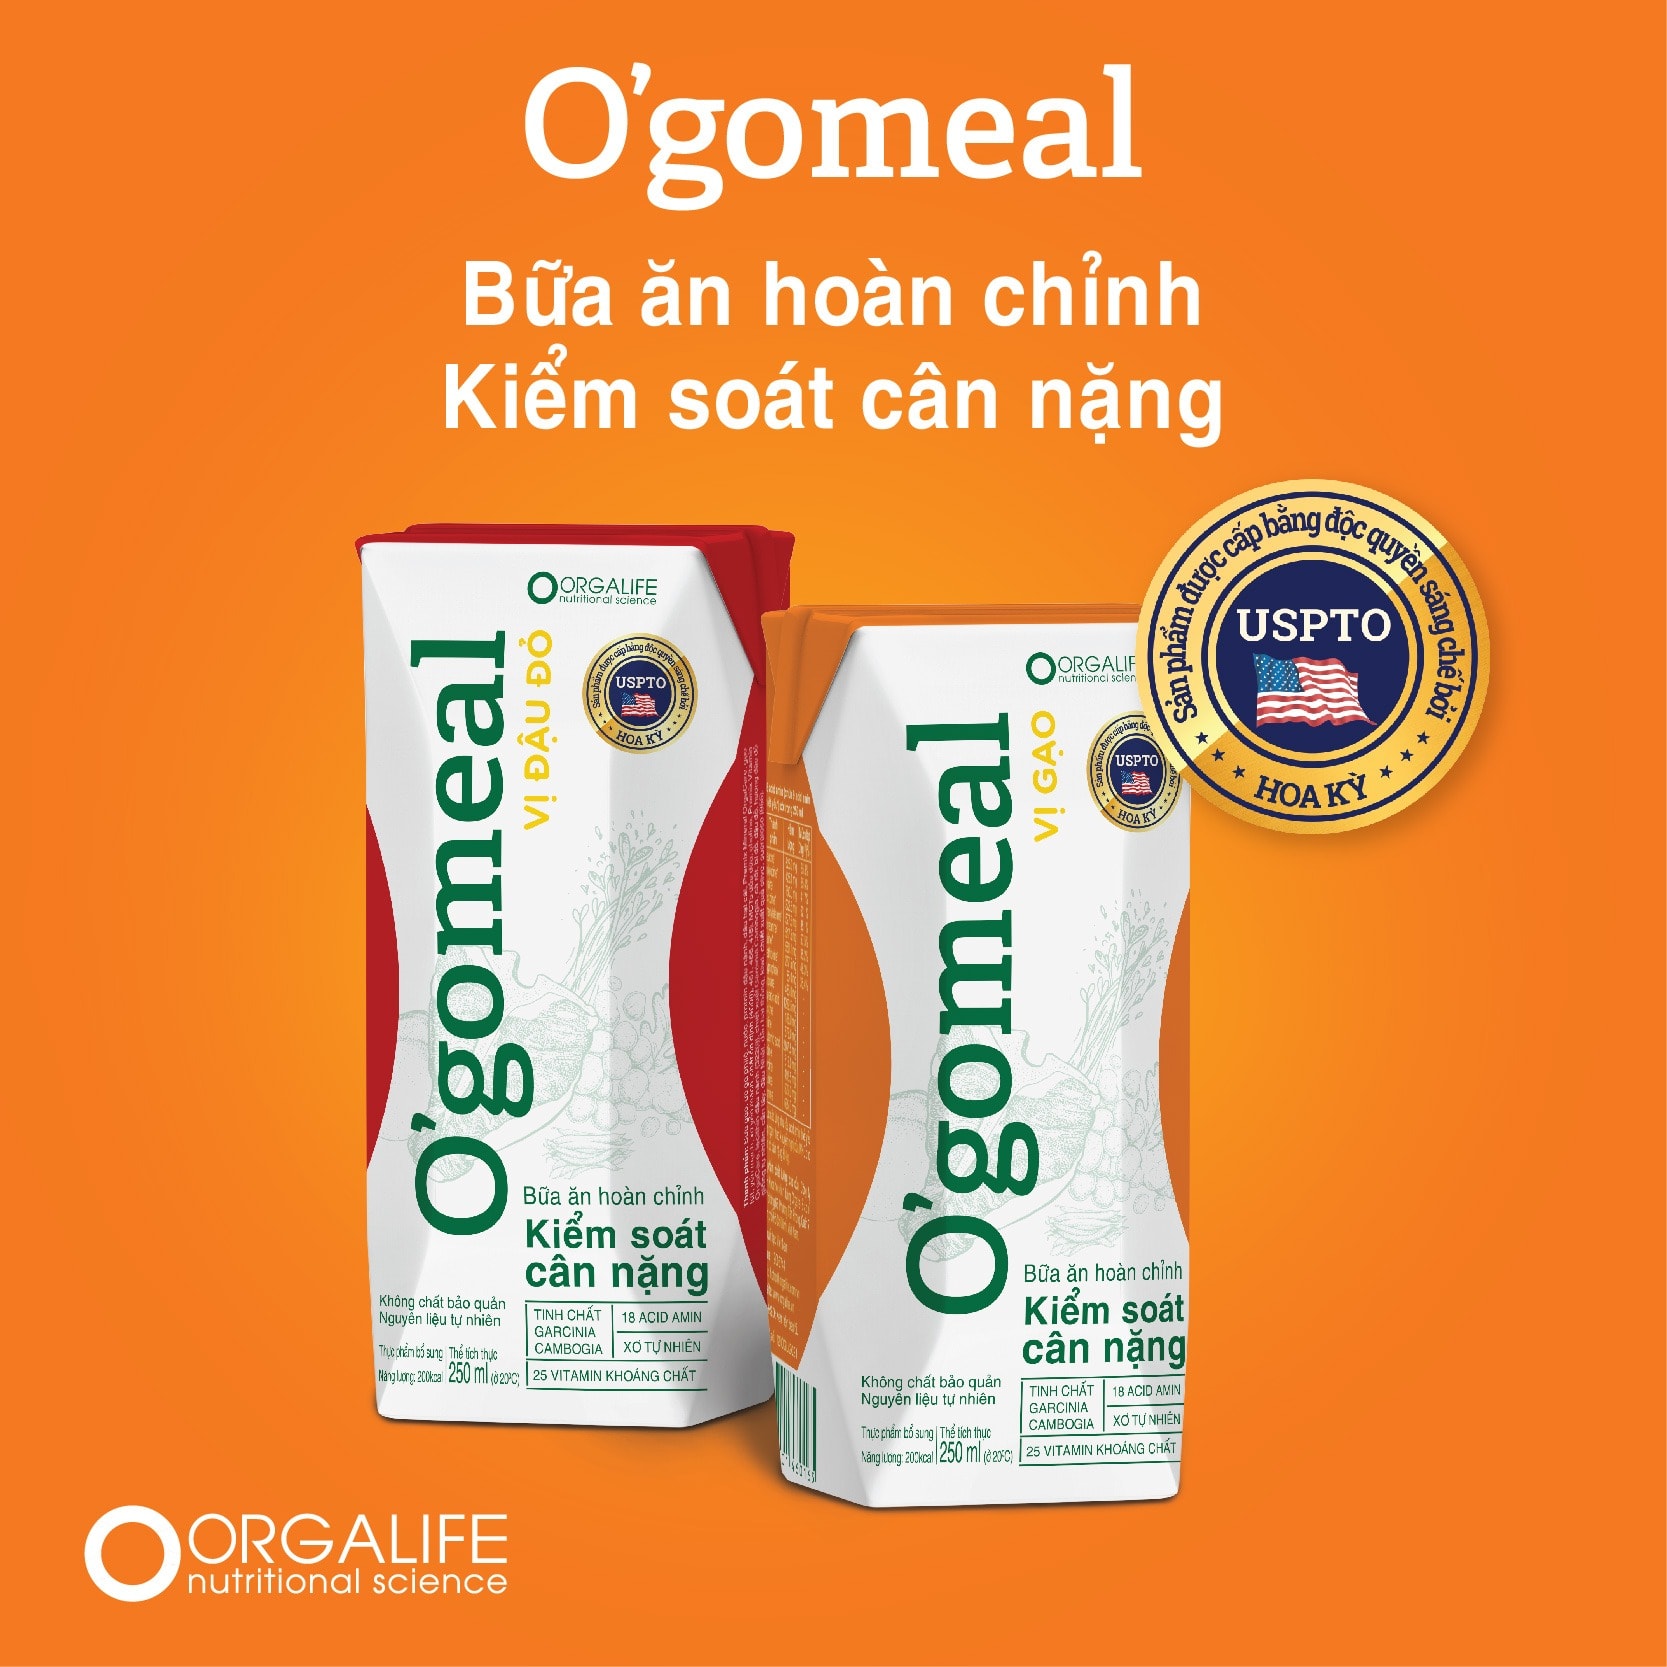 Orgalife - Thực phẩm dinh dưỡng O'gomeal (250ml) - 00d15f7d9172dea01f92c681f8eac182